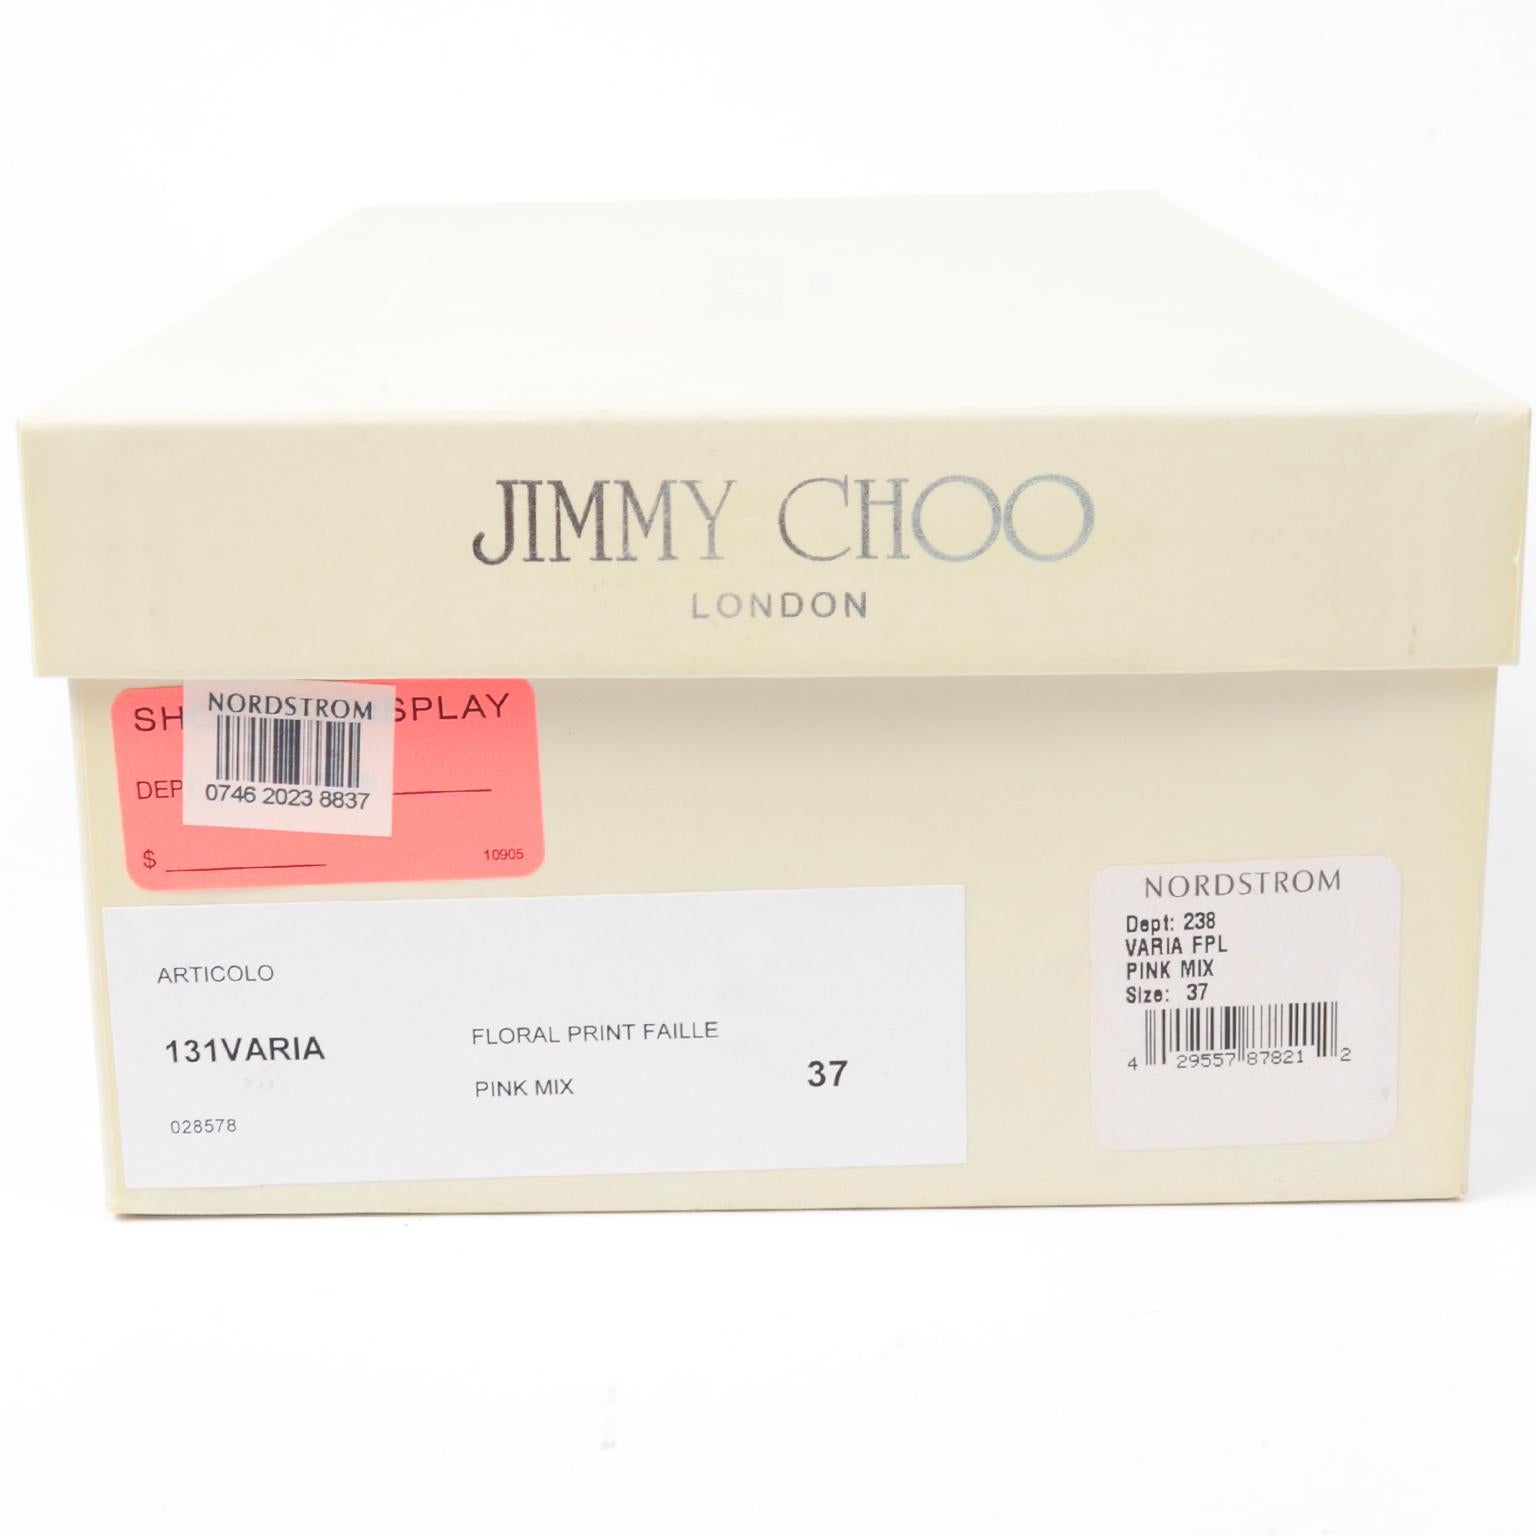 Jimmy Choo - Chaussures à fleurs roses - Talons aiguilles 6